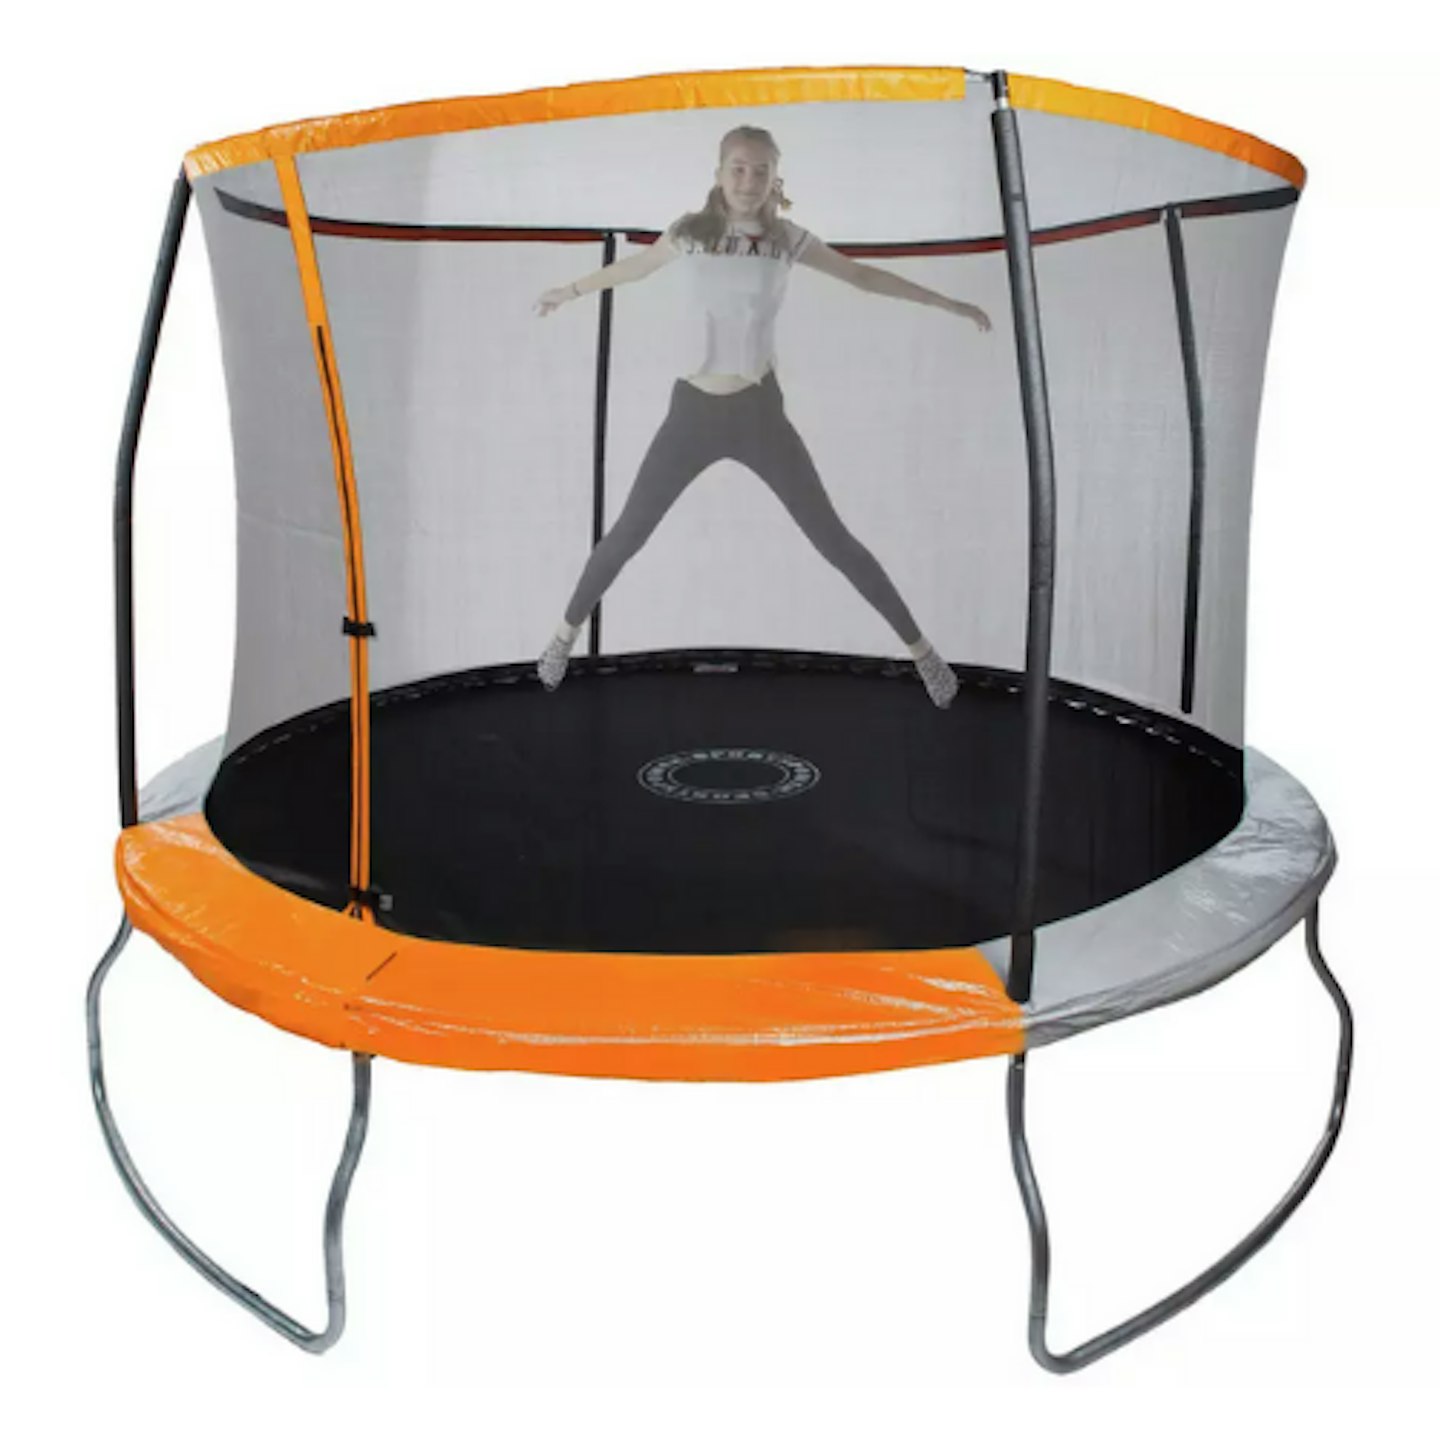 Best trampolines Sportspower 10ft Outdoor Kids Trampoline with Enclosure